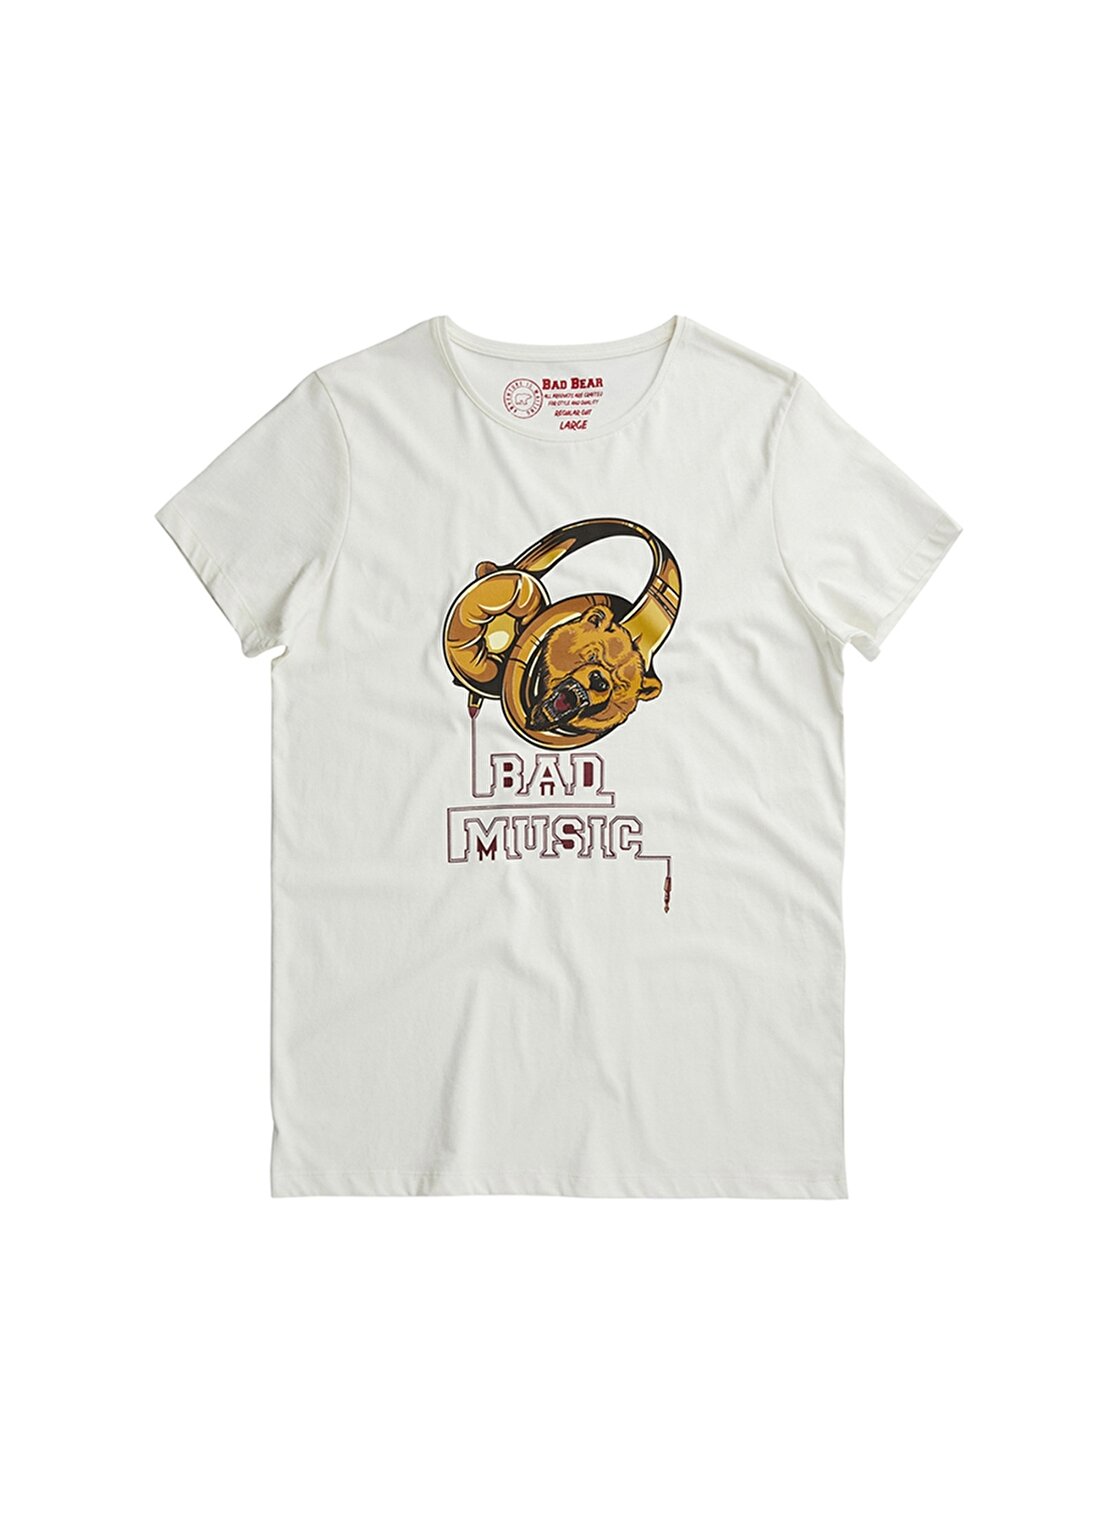 Bad Bear Bad Music T-Shirt